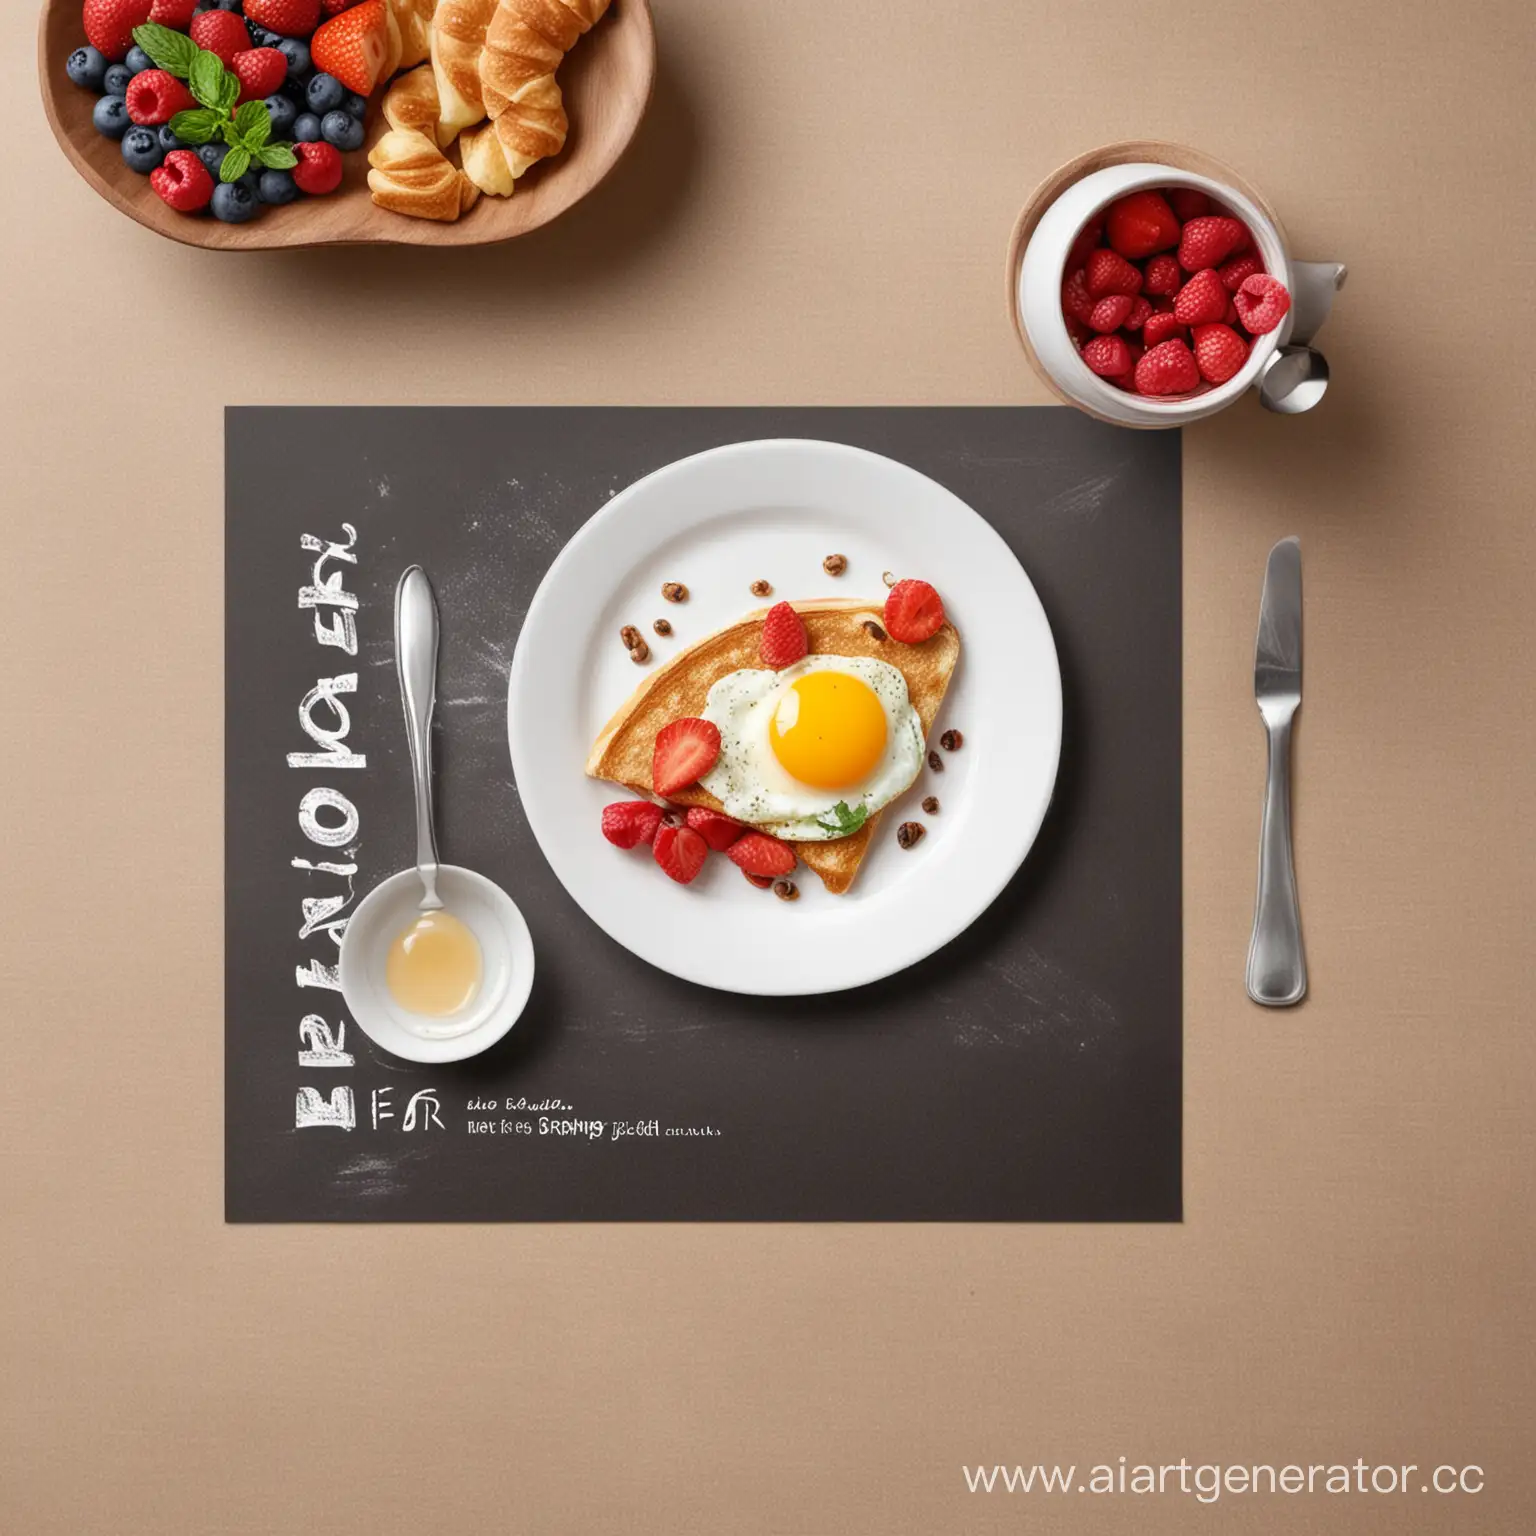 Создай фотографию для поста-приглошения на бизнес-завтрак на тему "продажи", без фотографии и рисунков еды